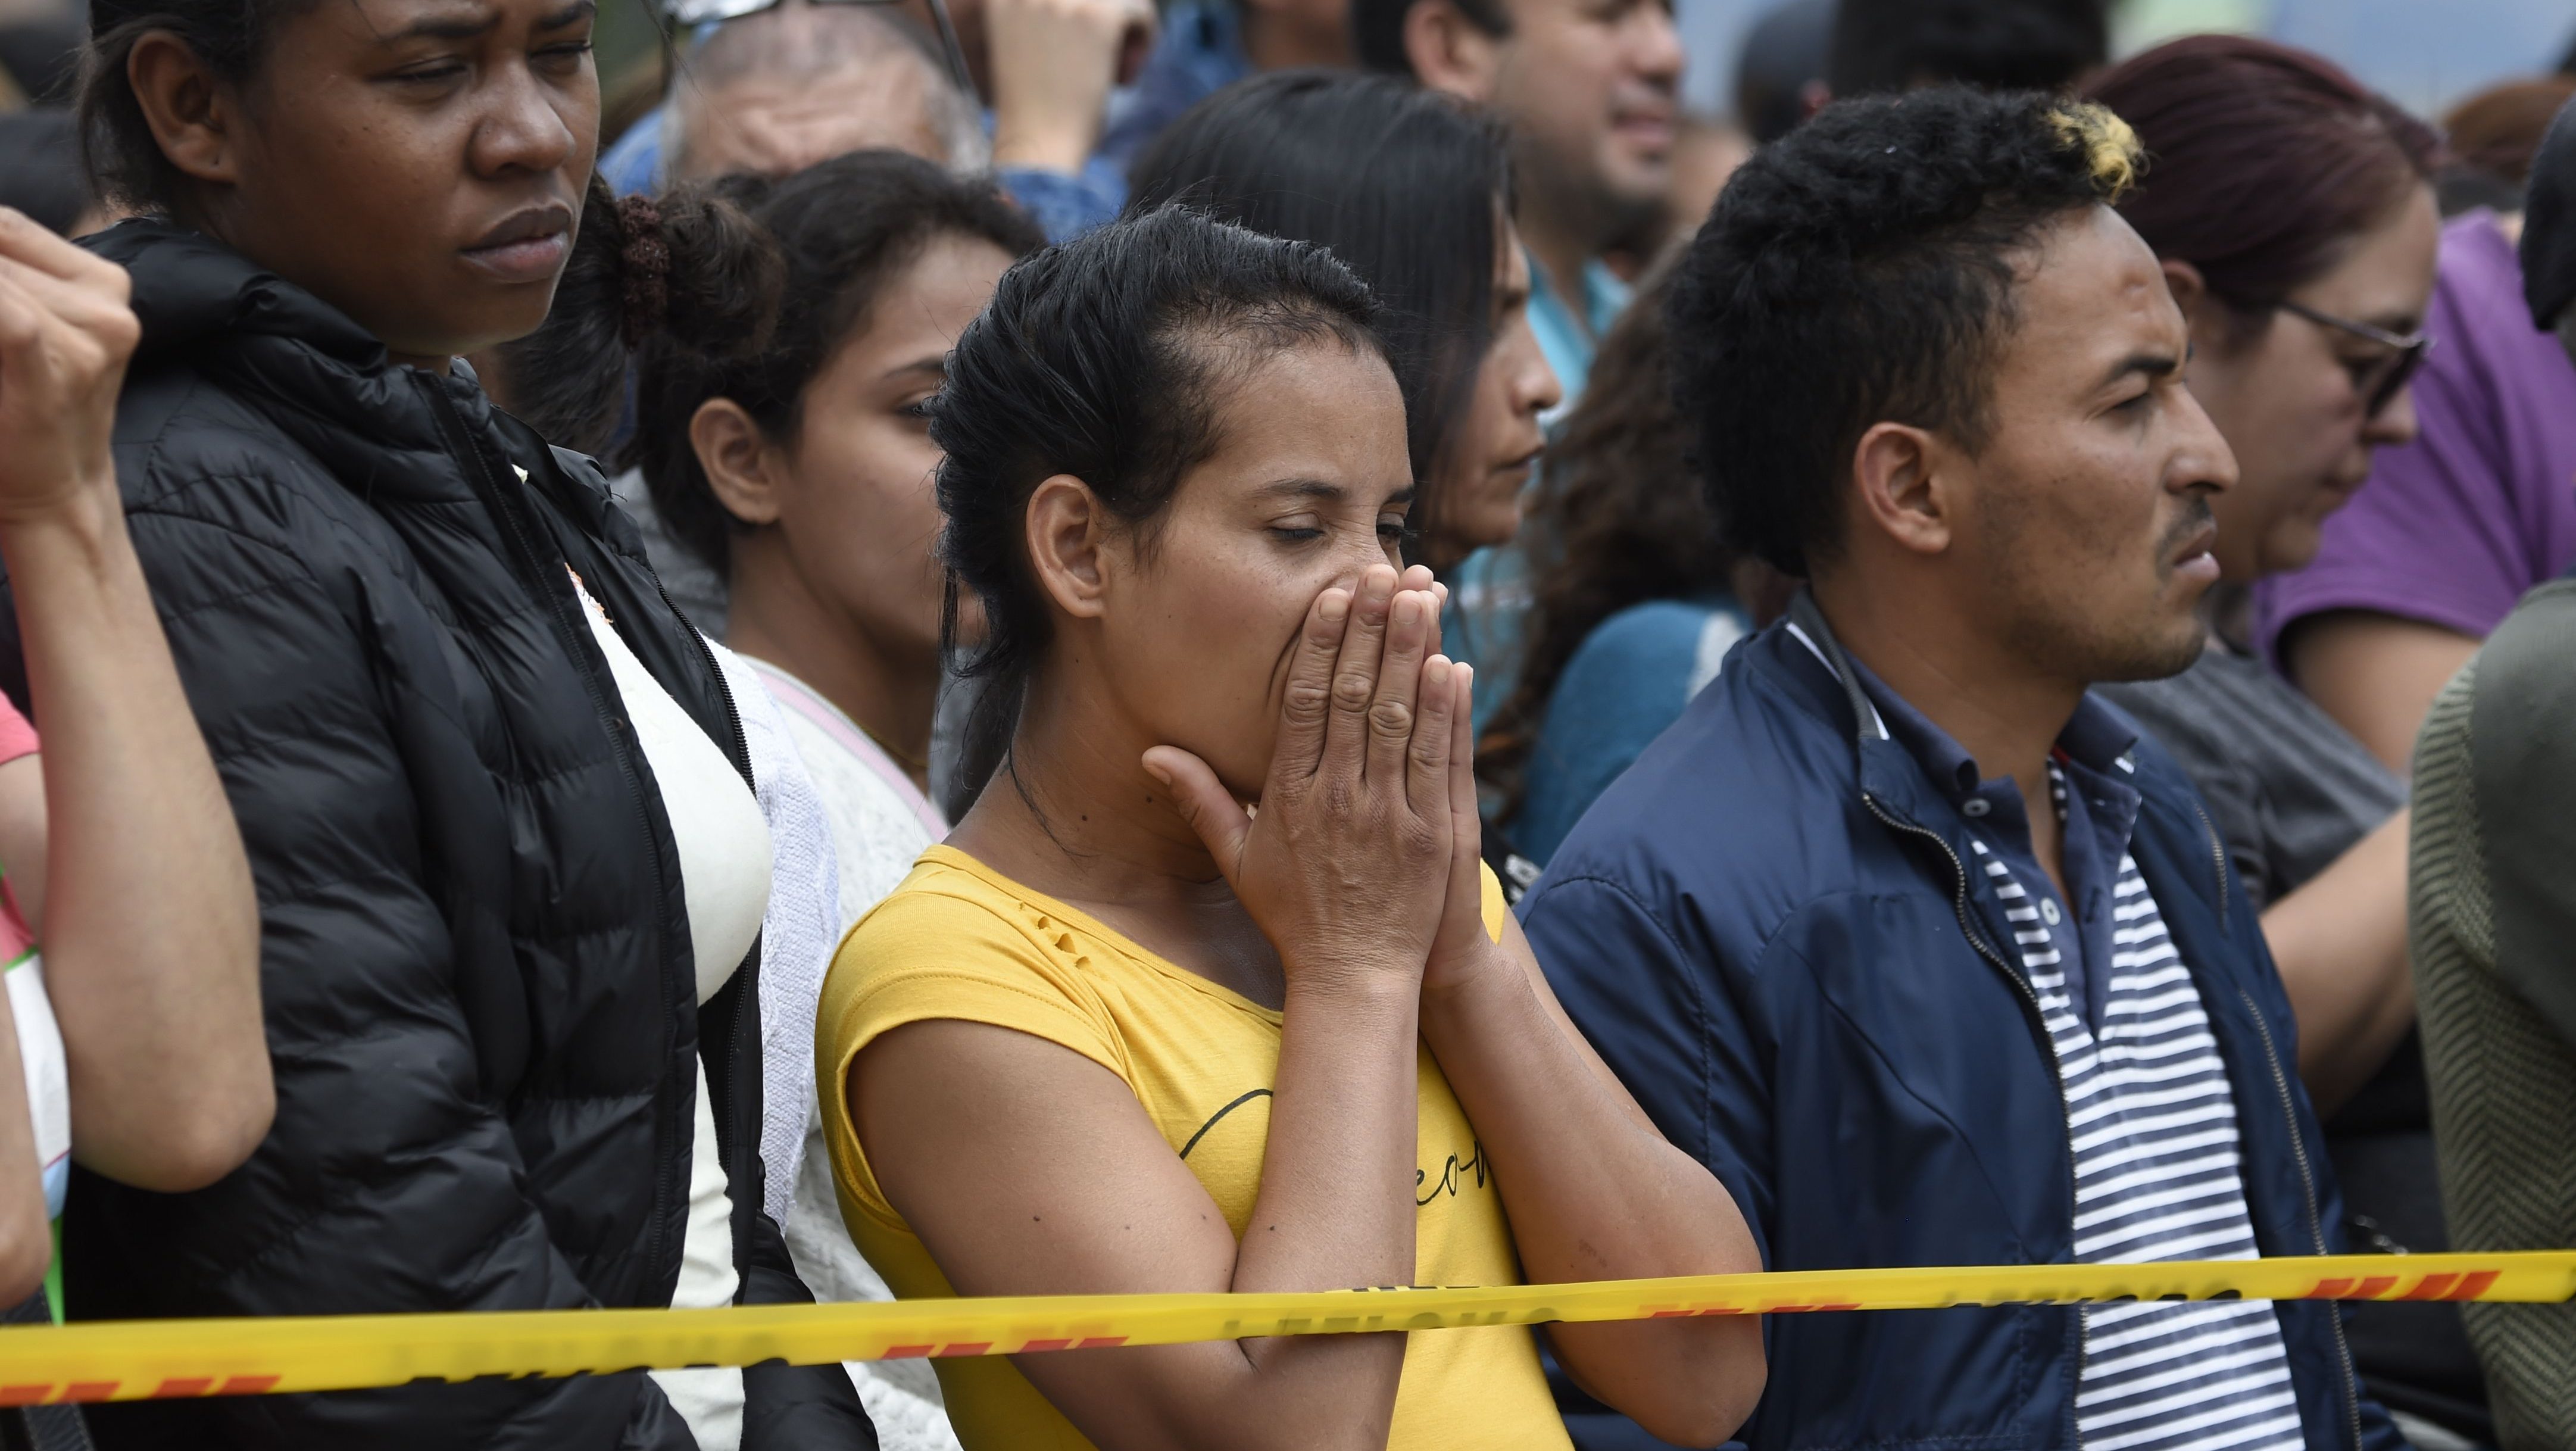 La gente espera noticias cerca del lugar de la explosión en una escuela de entrenamiento de cadetes de la policía en Bogotá el 17 de enero de 2019. Crédito: JUAN BARRETO / AFP / Getty Images